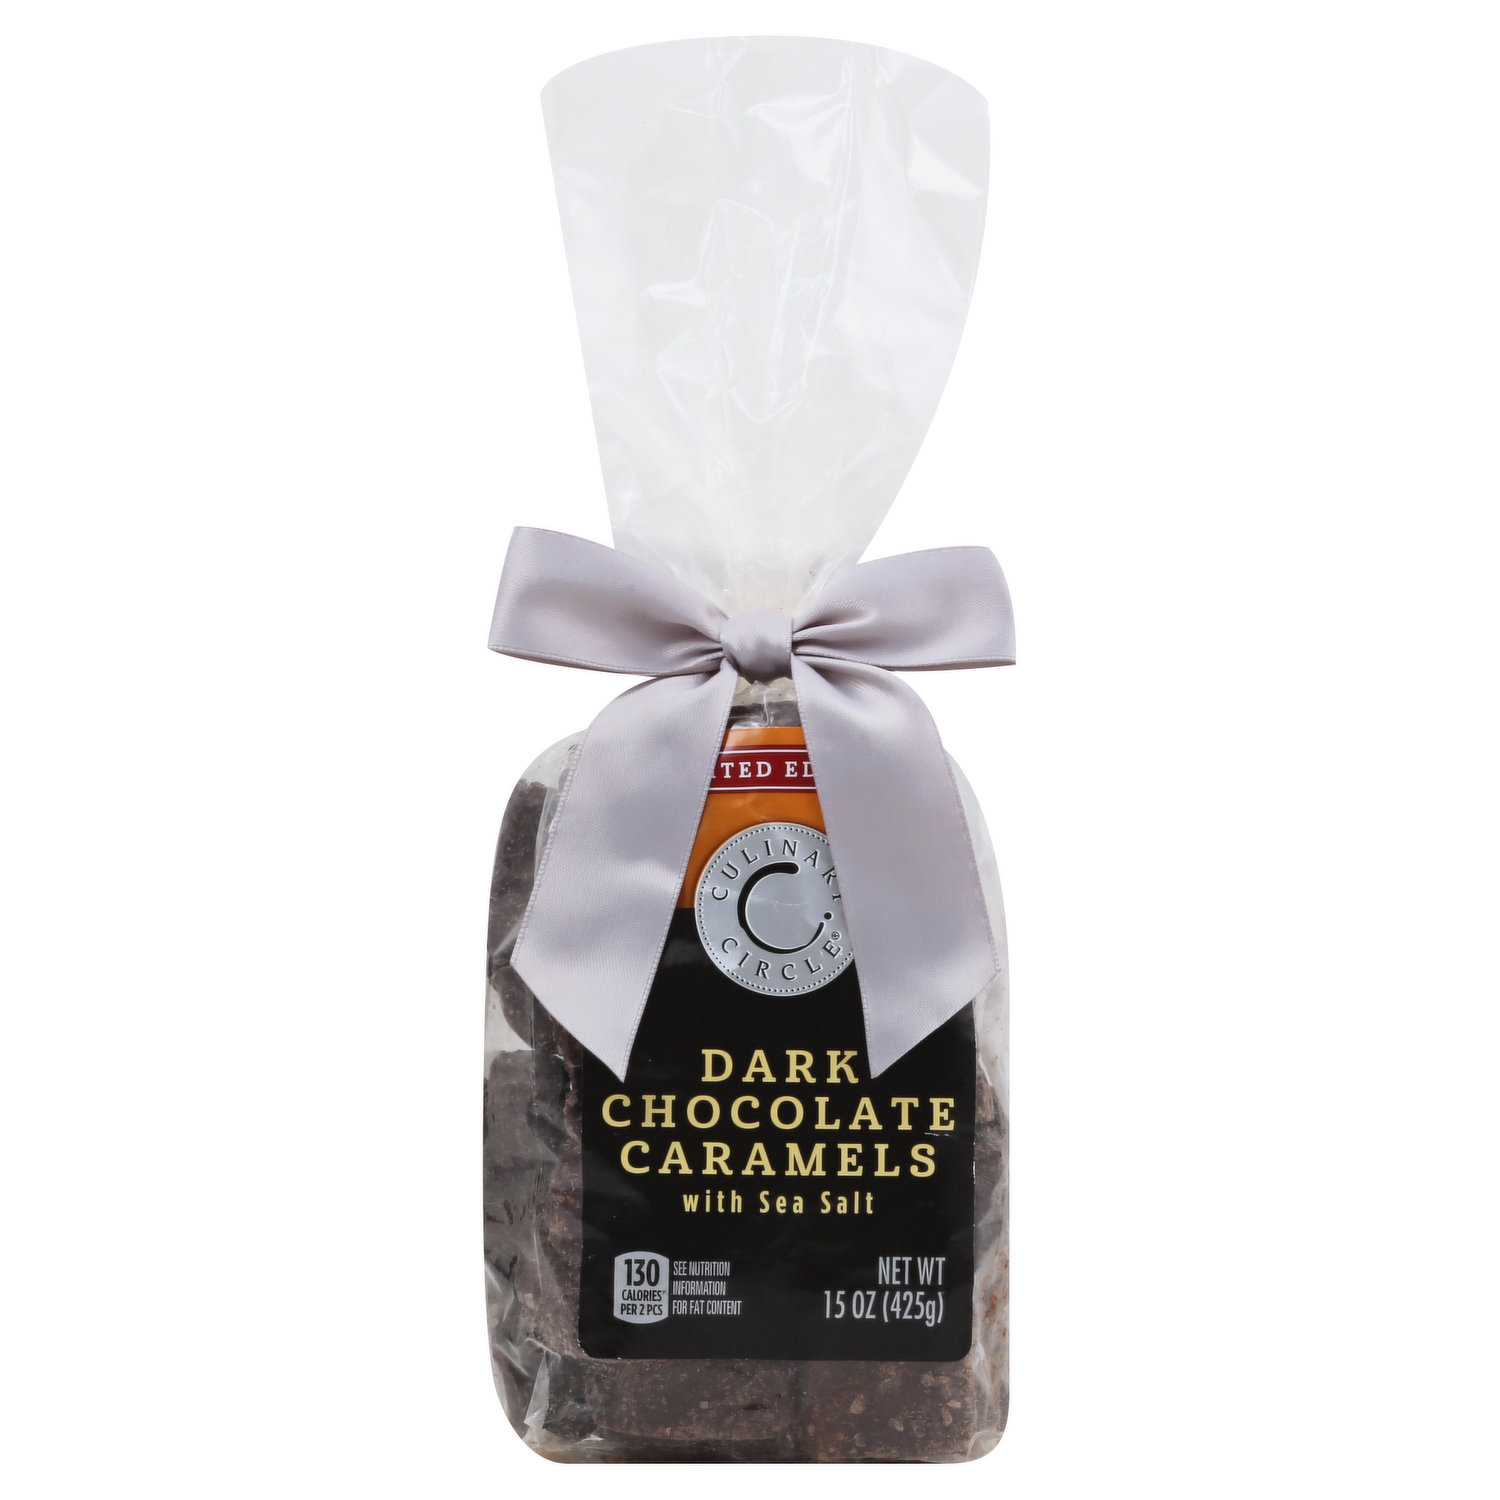 Sanders Milk Chocolate Sea Salt Caramel Mini Bites 3.75 oz